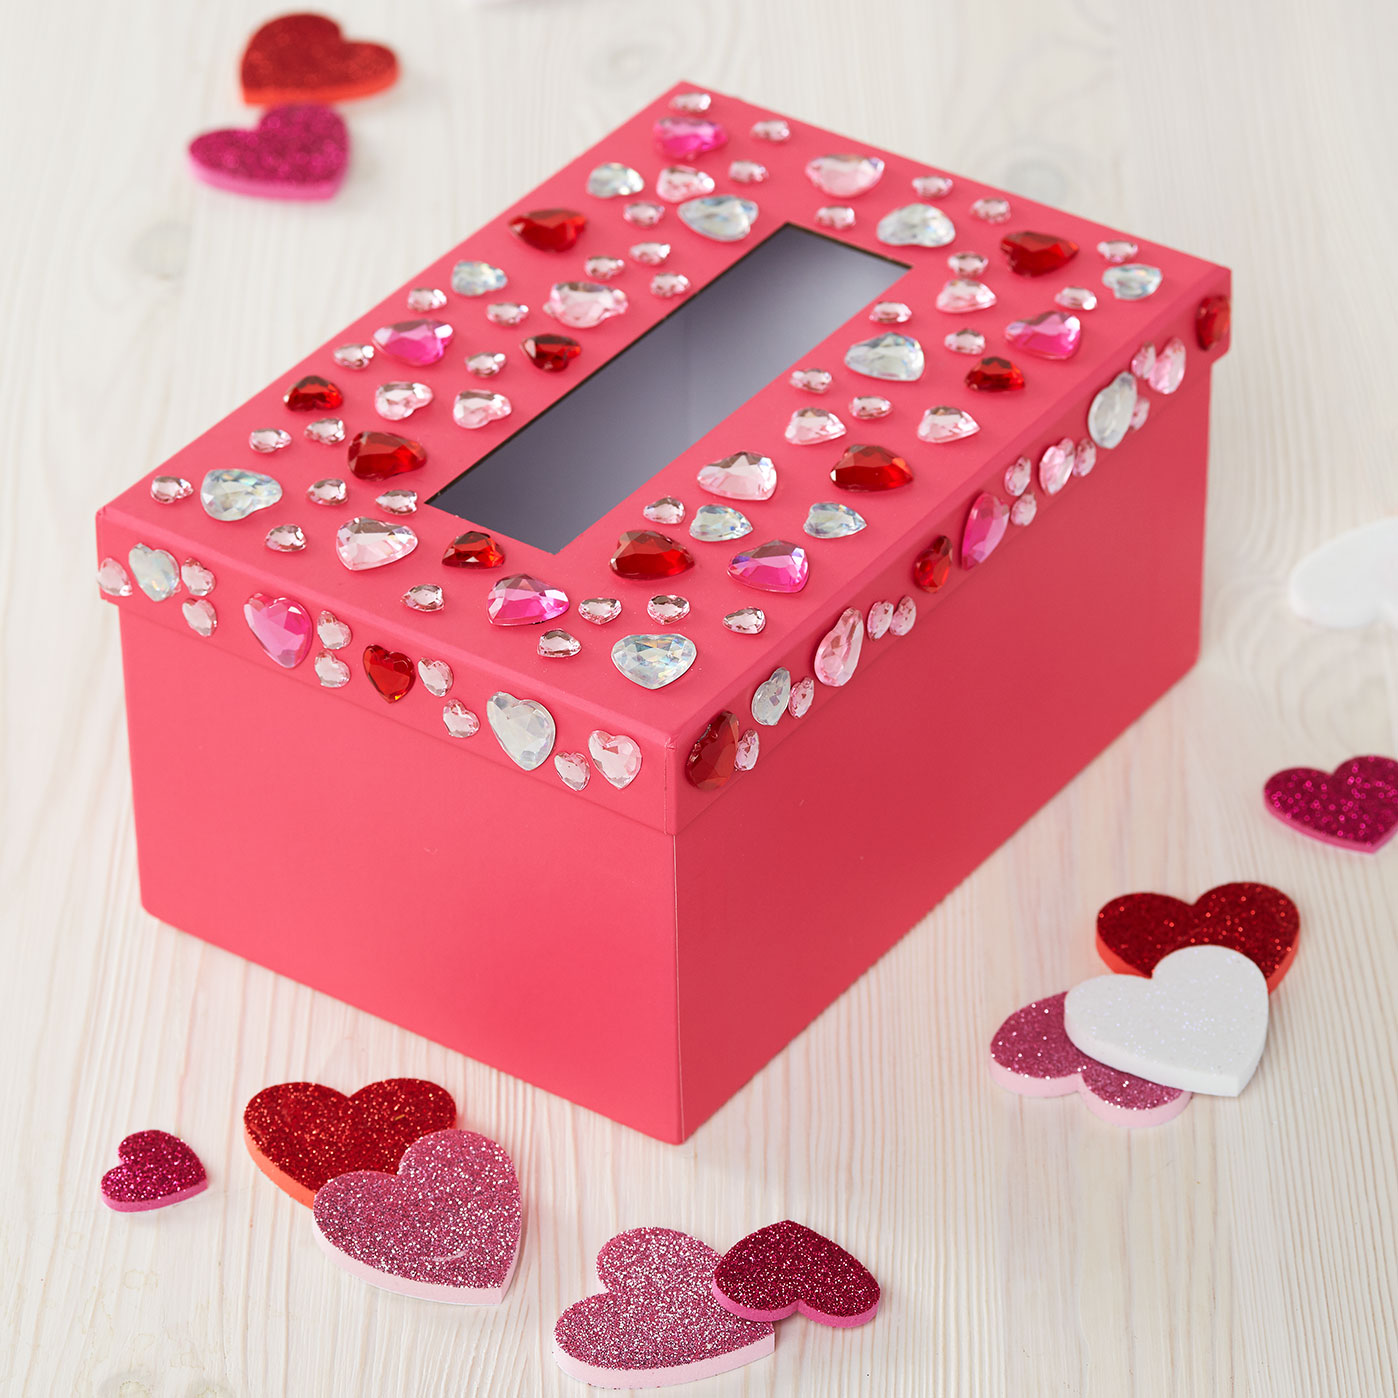 isabella-s-valentine-box-2014-valentine-card-box-diy-valentines